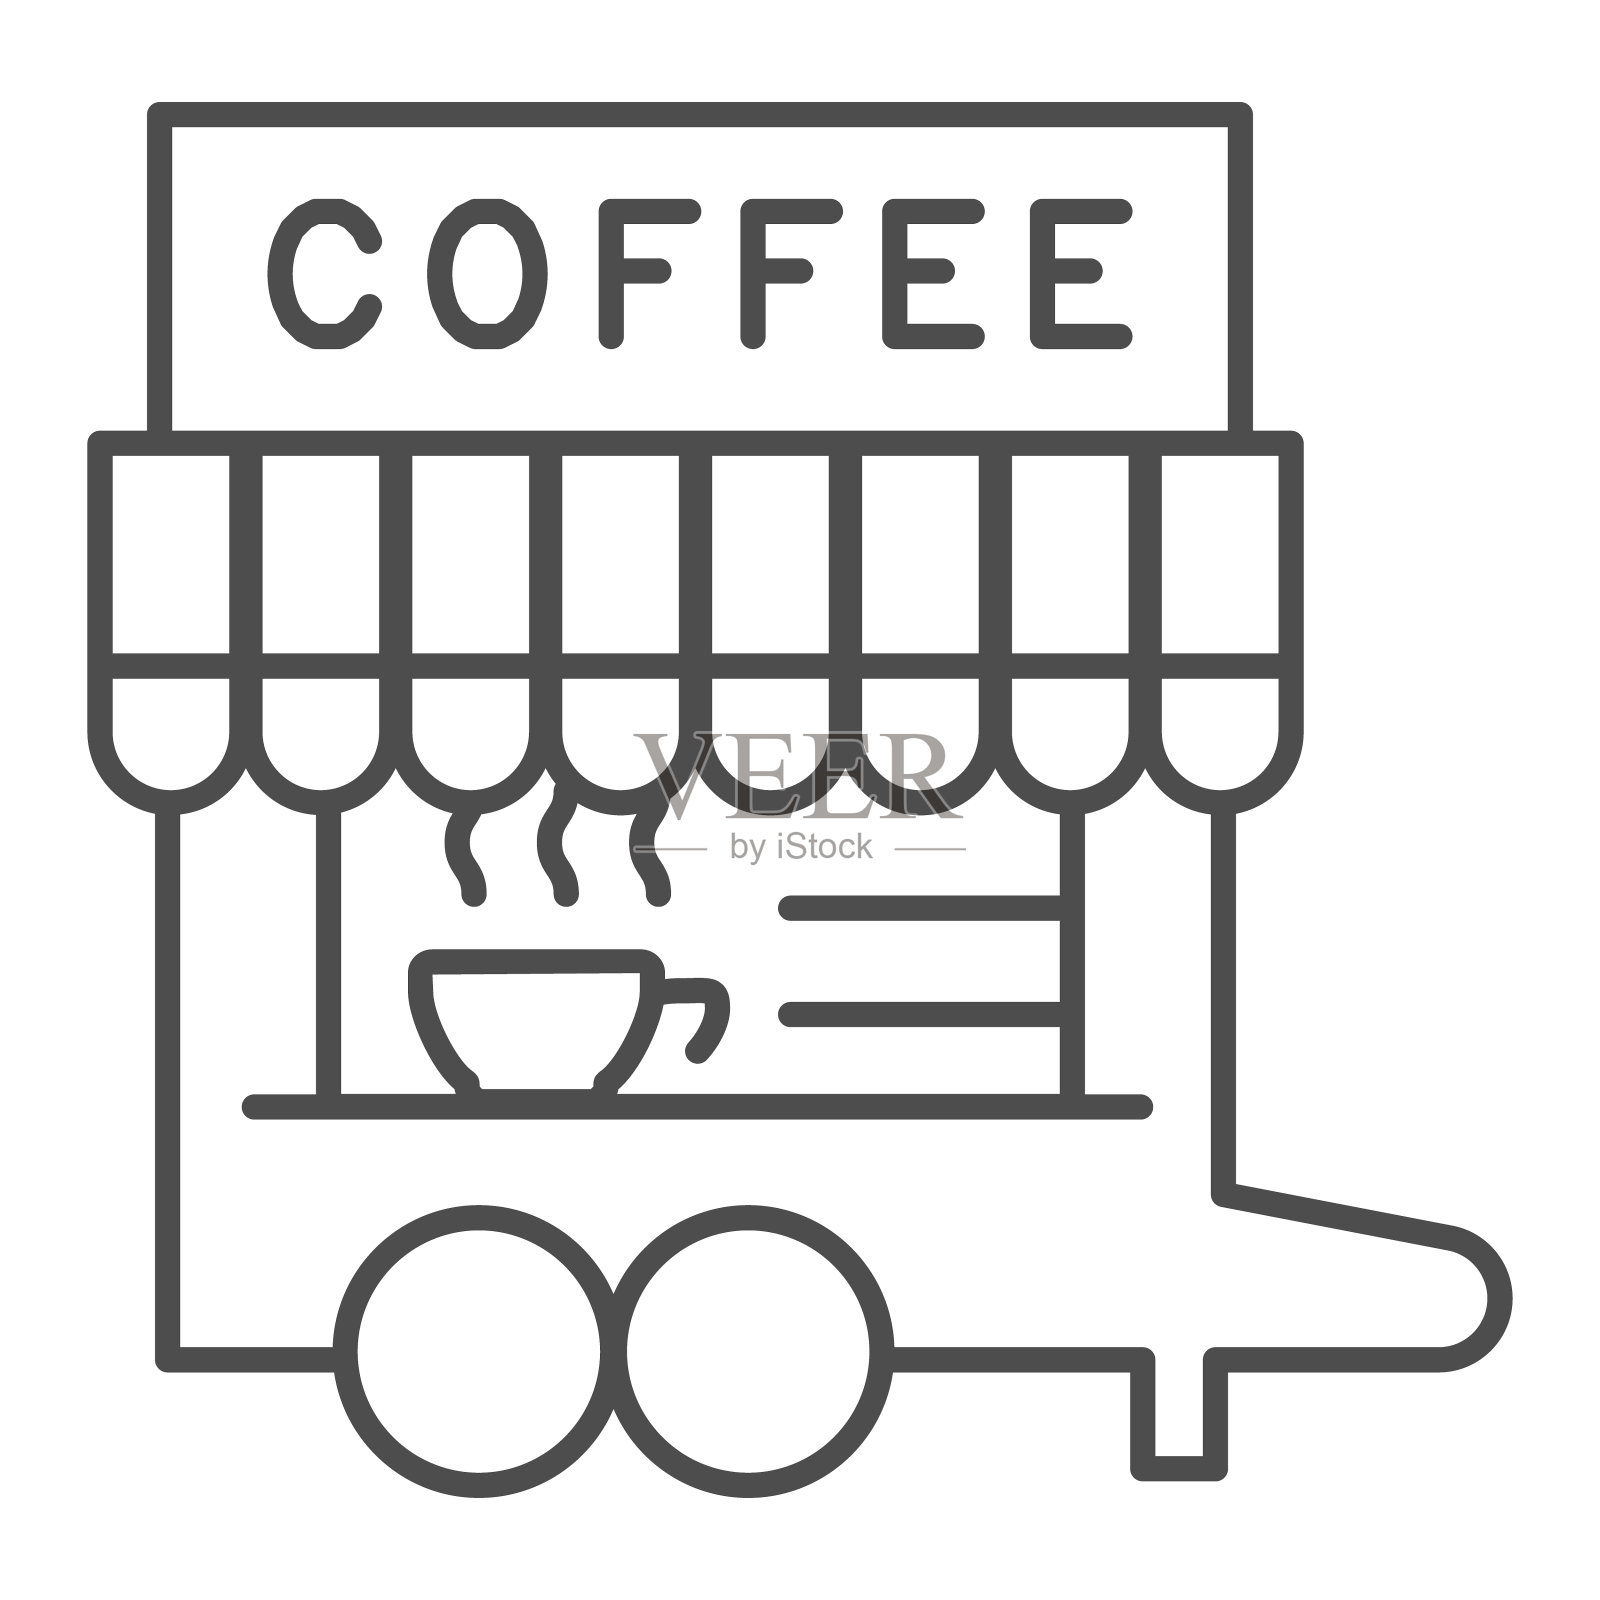 咖啡打破摊位细线图标。街头热饮车与招牌符号，轮廓风格的象形文字上的白色背景。咖啡或咖啡标志的移动概念，网页设计。矢量图形。插画图片素材